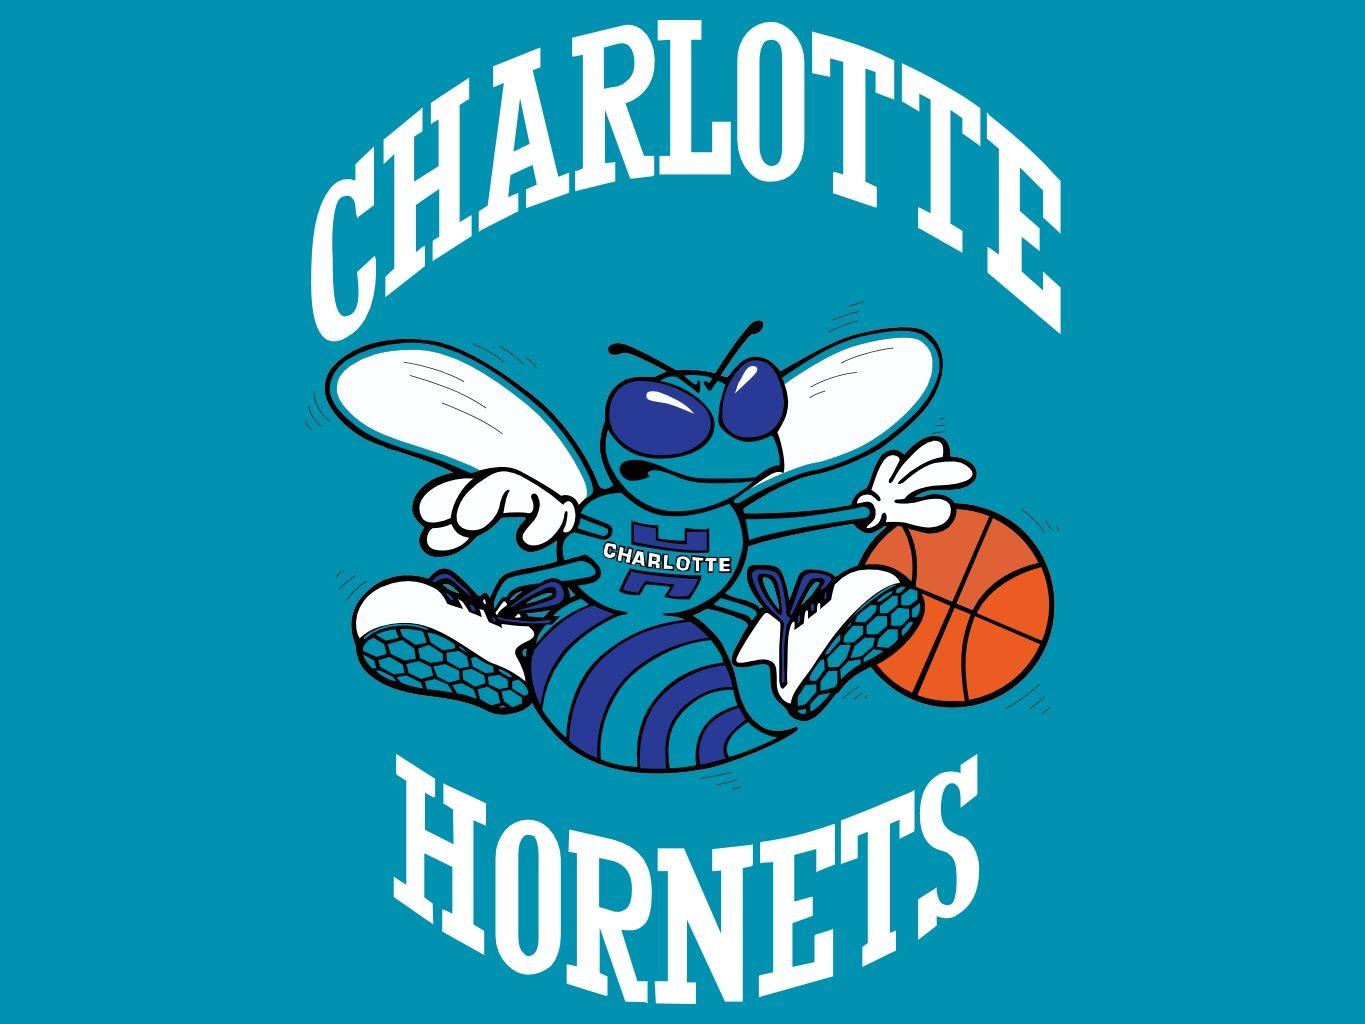 Wallpaper wallpaper sport logo basketball NBA glitter checkered  Charlotte Hornets images for desktop section спорт  download